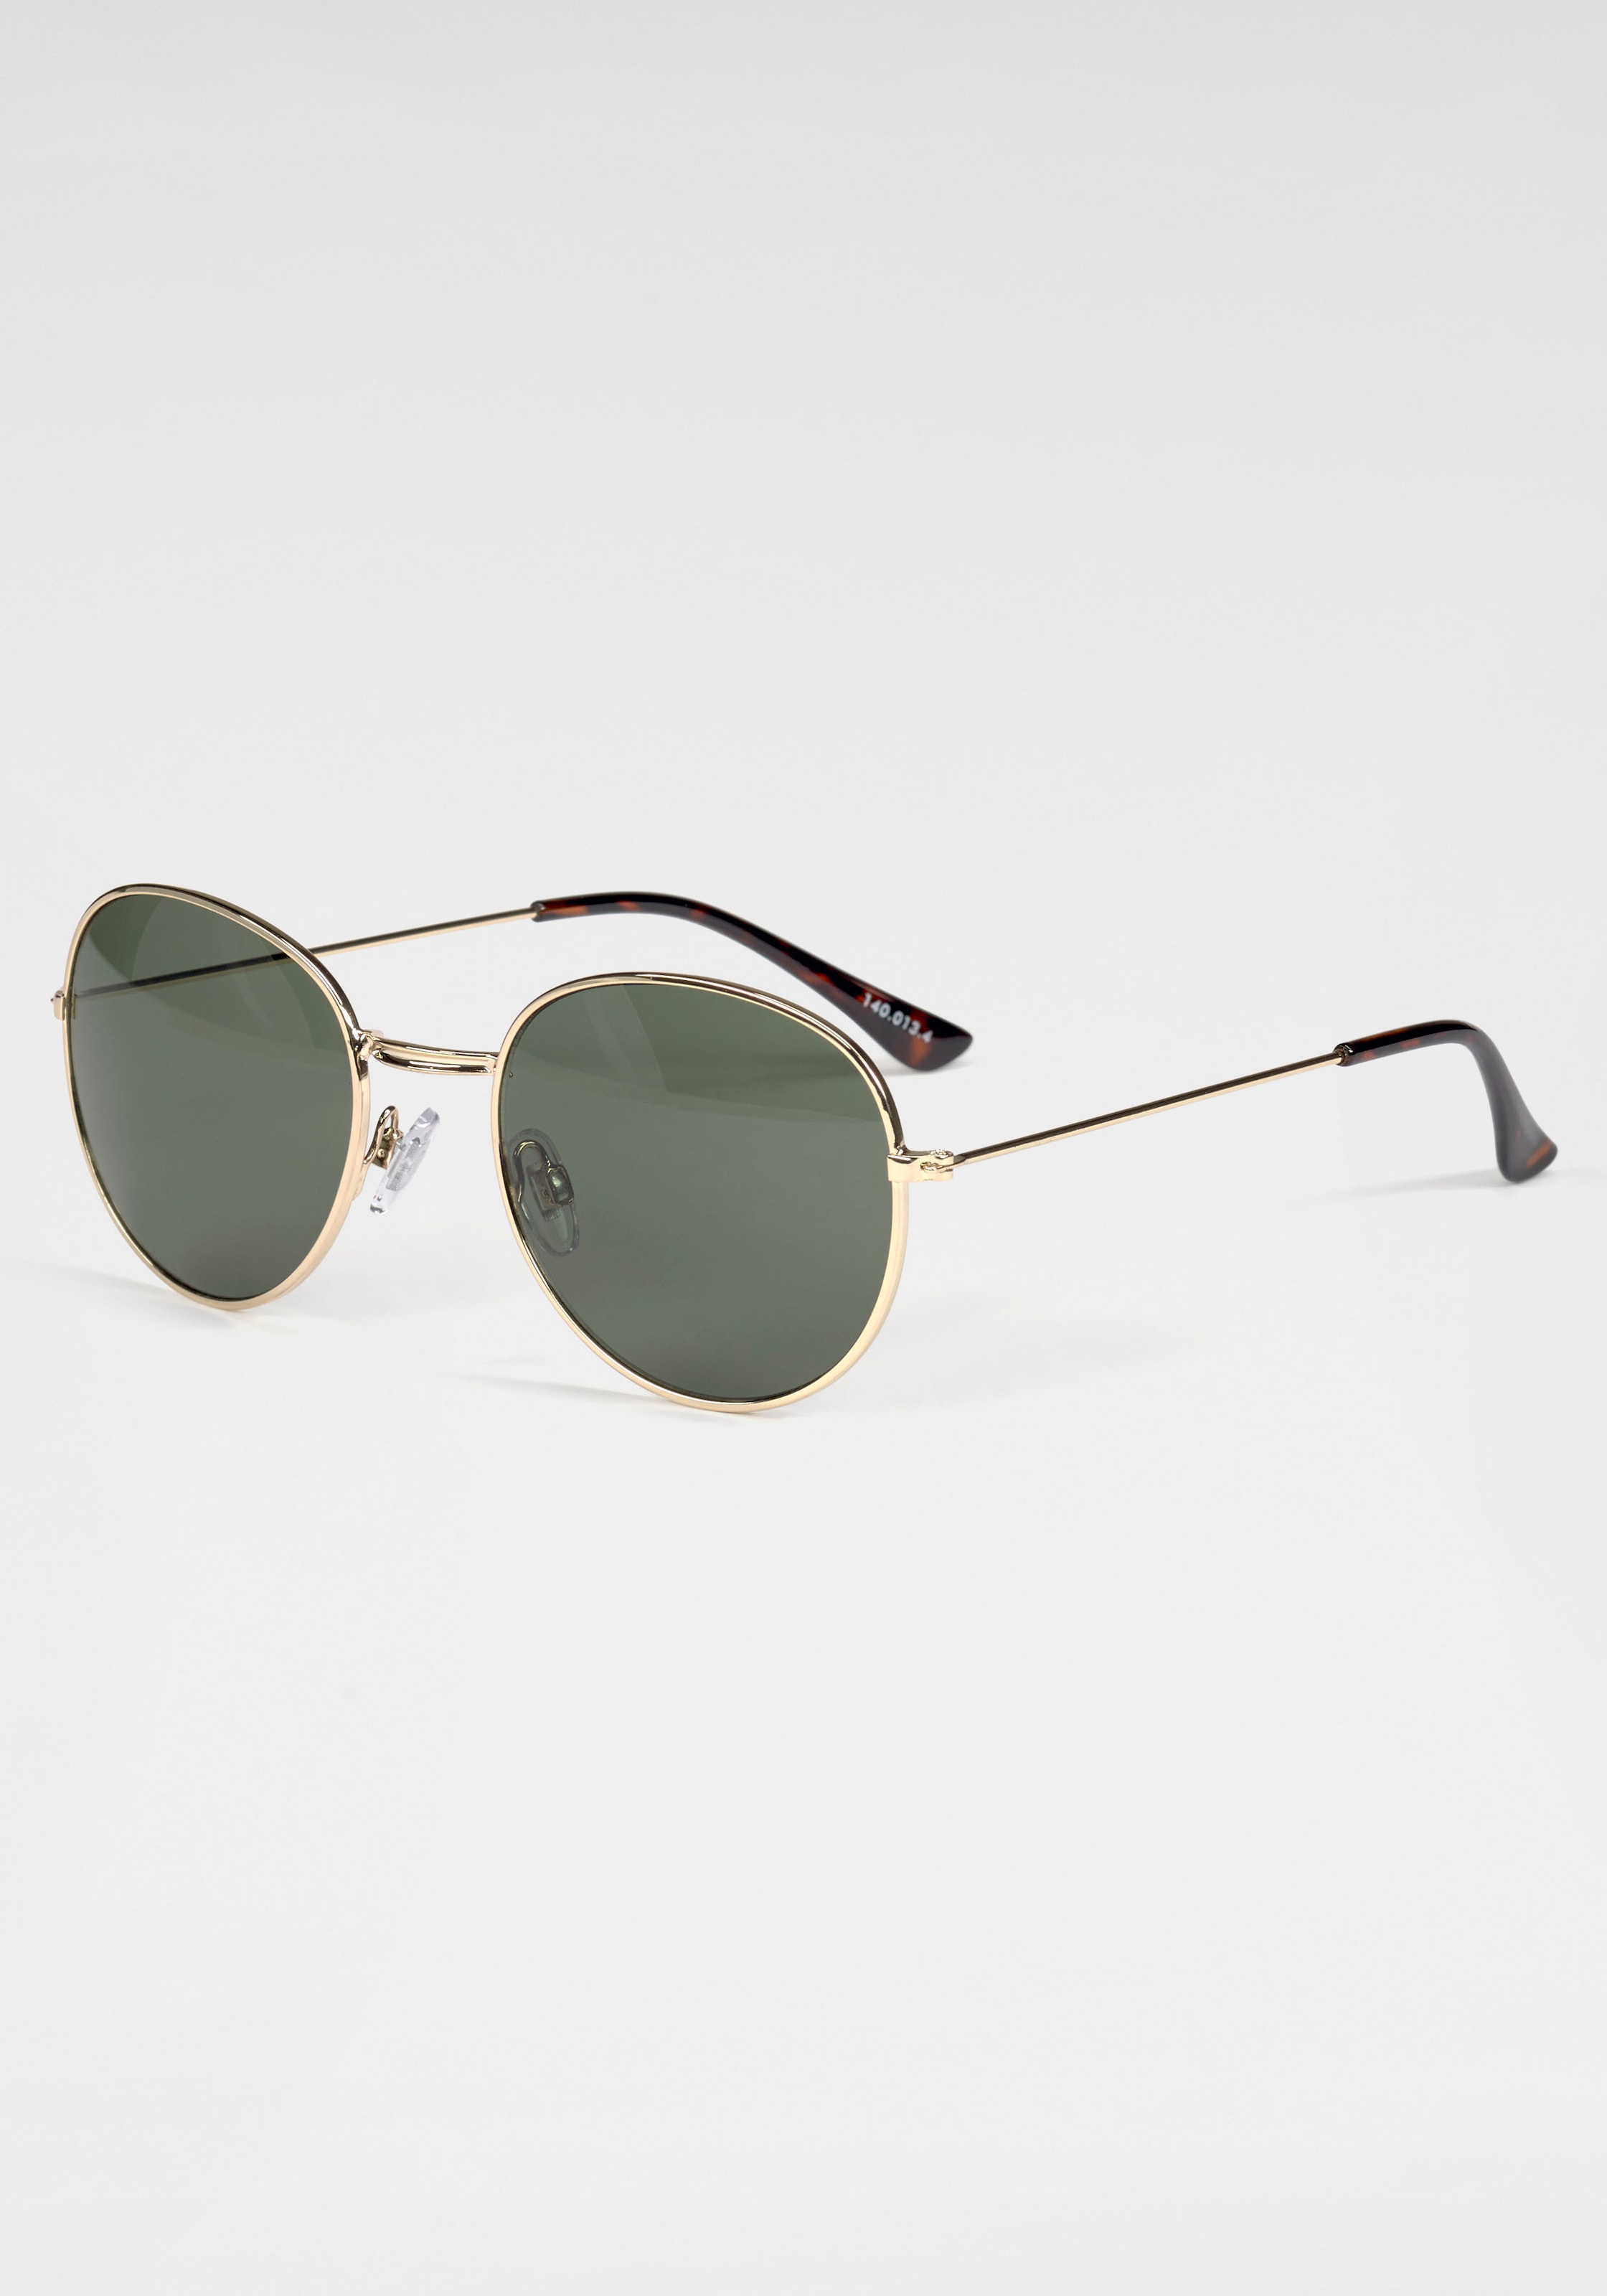 BASEFIELD Sonnenbrille, Klassische runde Metall-Sonnenbrille in goldfarben